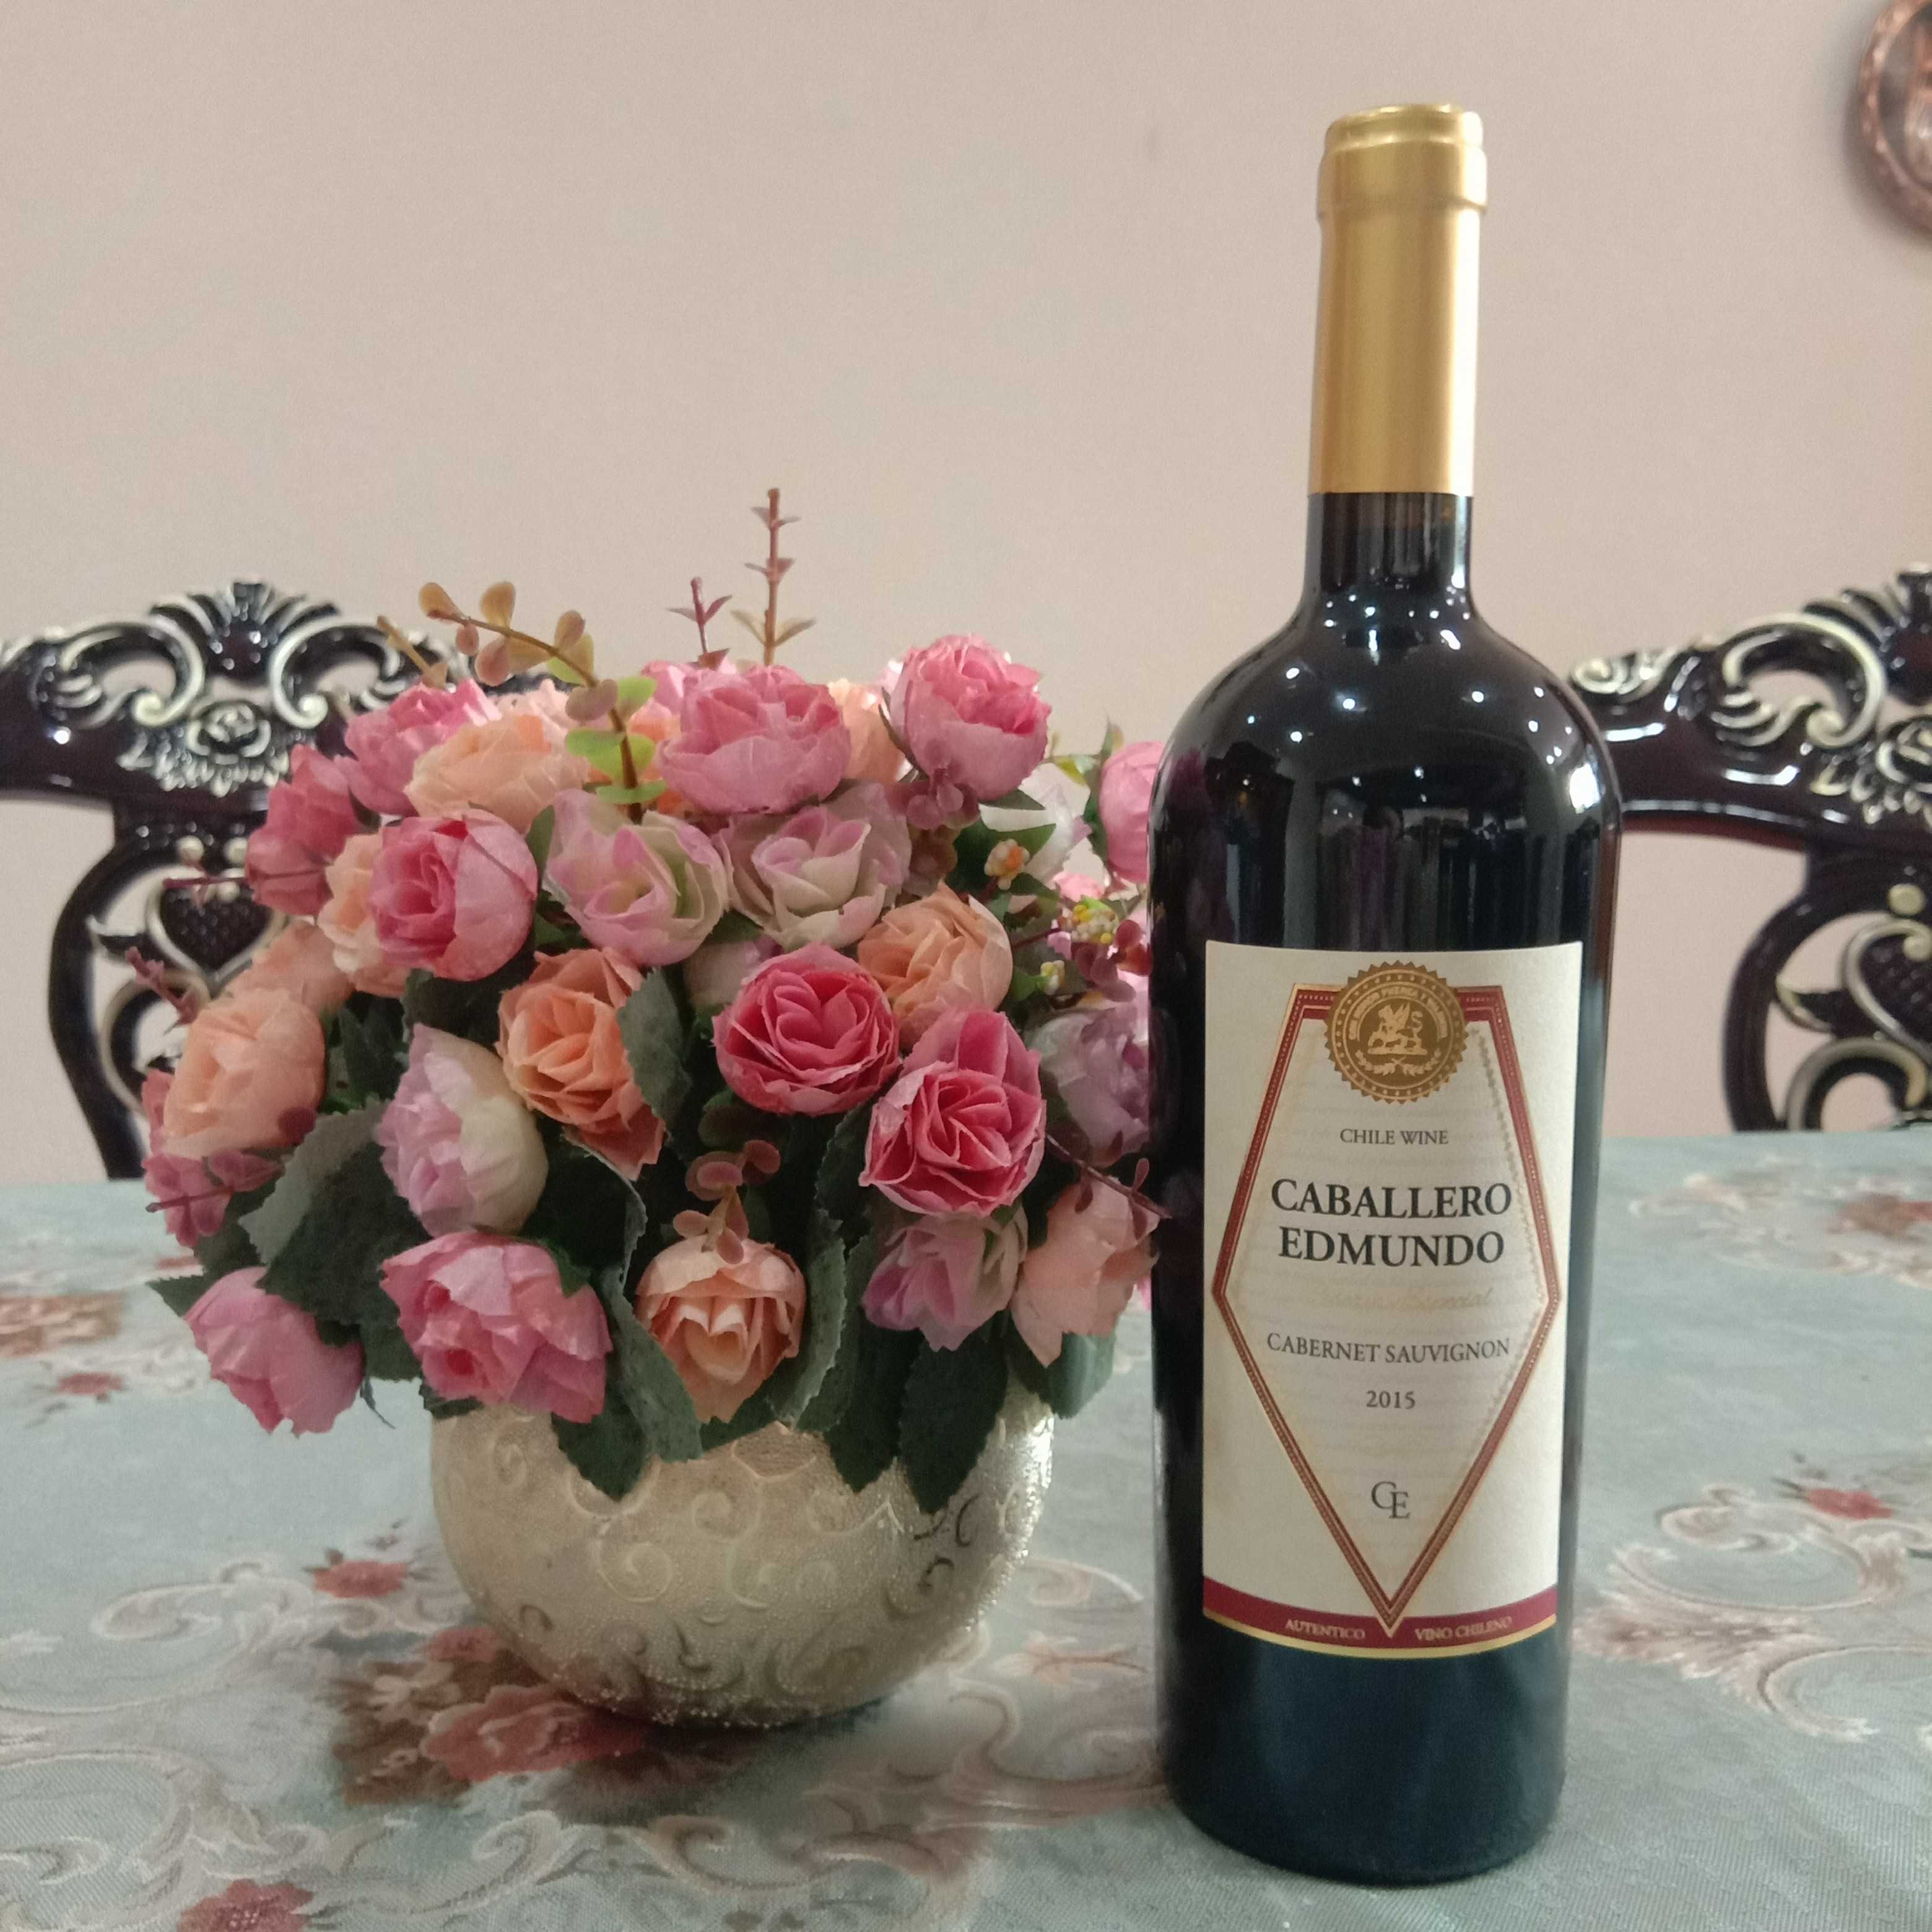 Caballero Edmundo Cabernet Sauvignon Red Wine 2015